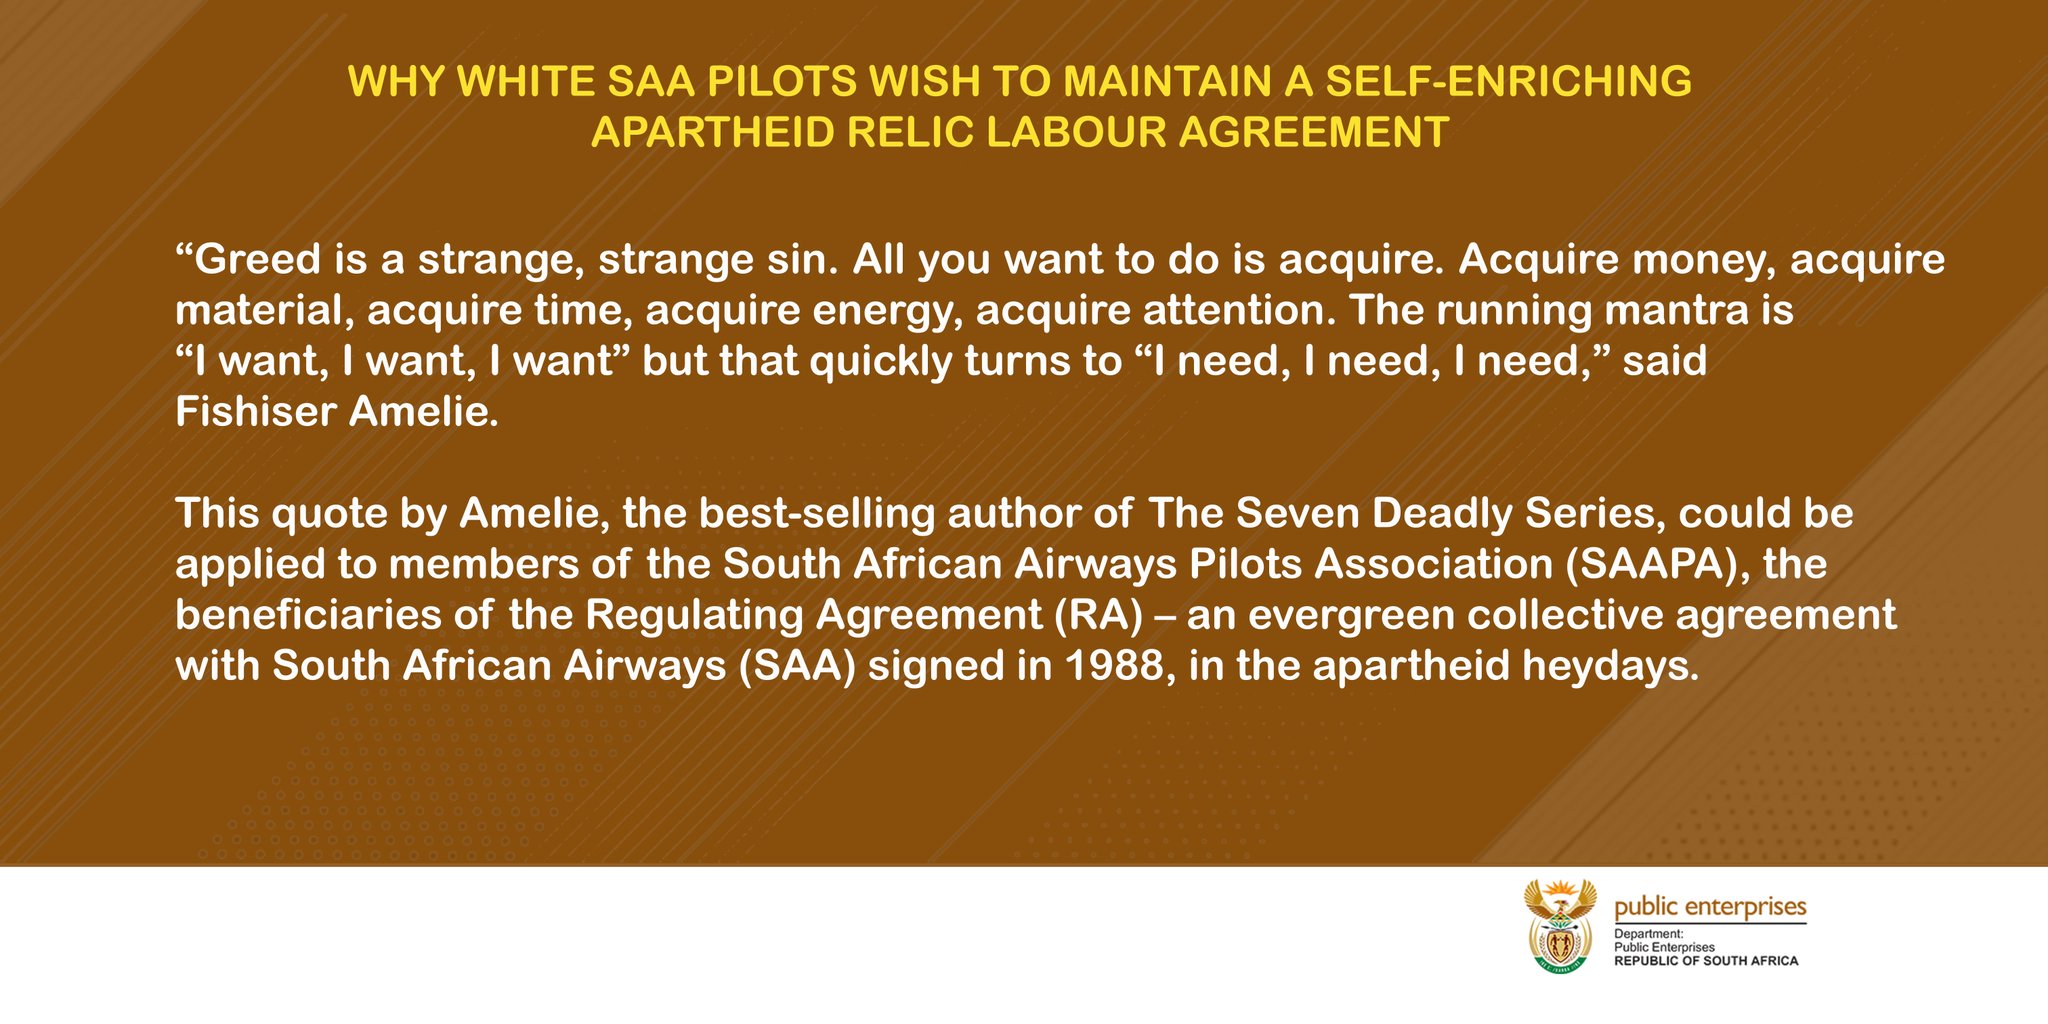 White SAA pilots tweet by Dept of Enterprises